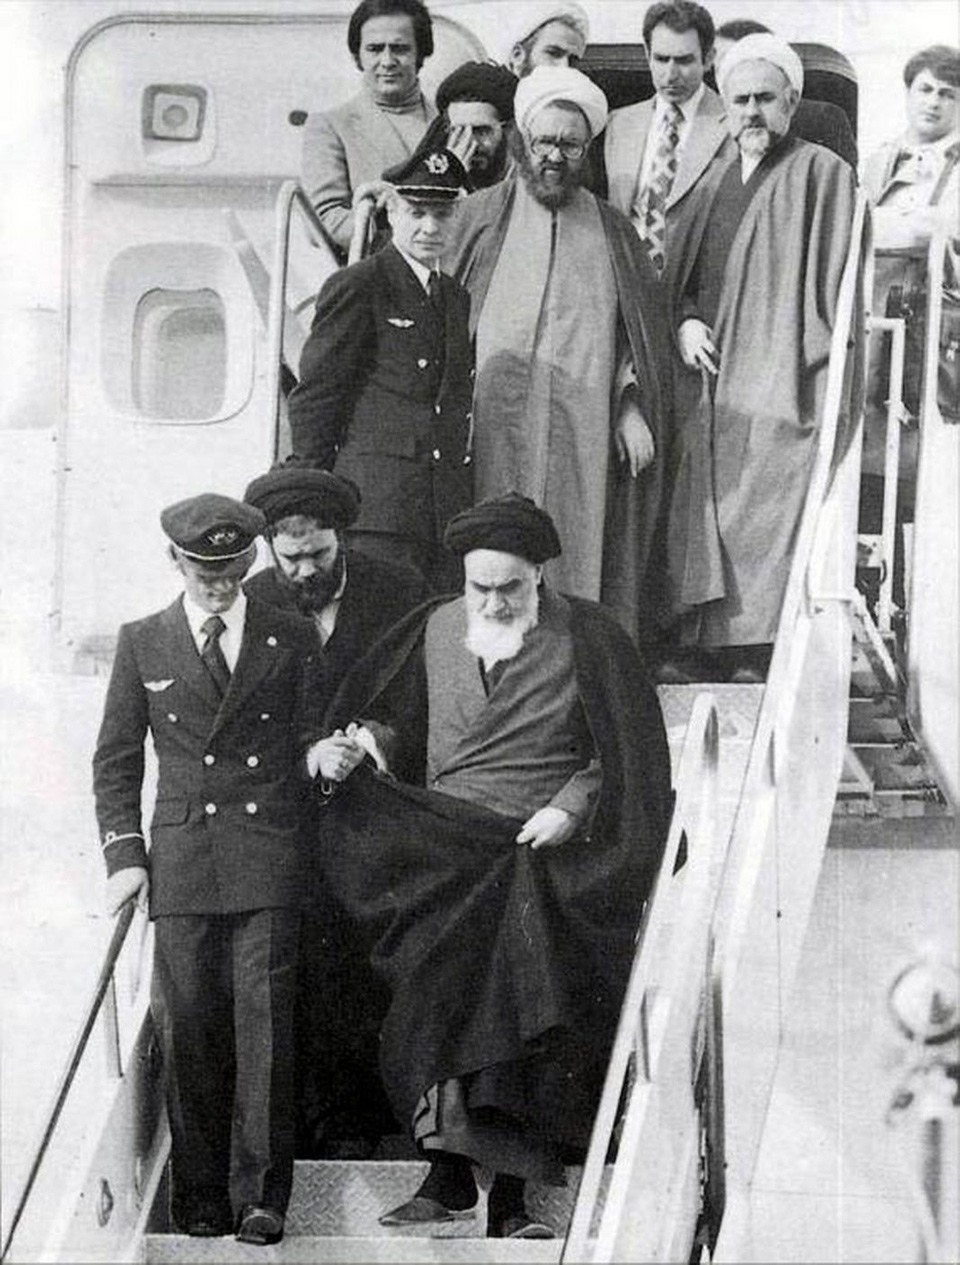 16 حقيقة تسمع بها لأول مرة حول الثورة الإسلامية الإيرانية وكيف غيرت تاريخ العالم